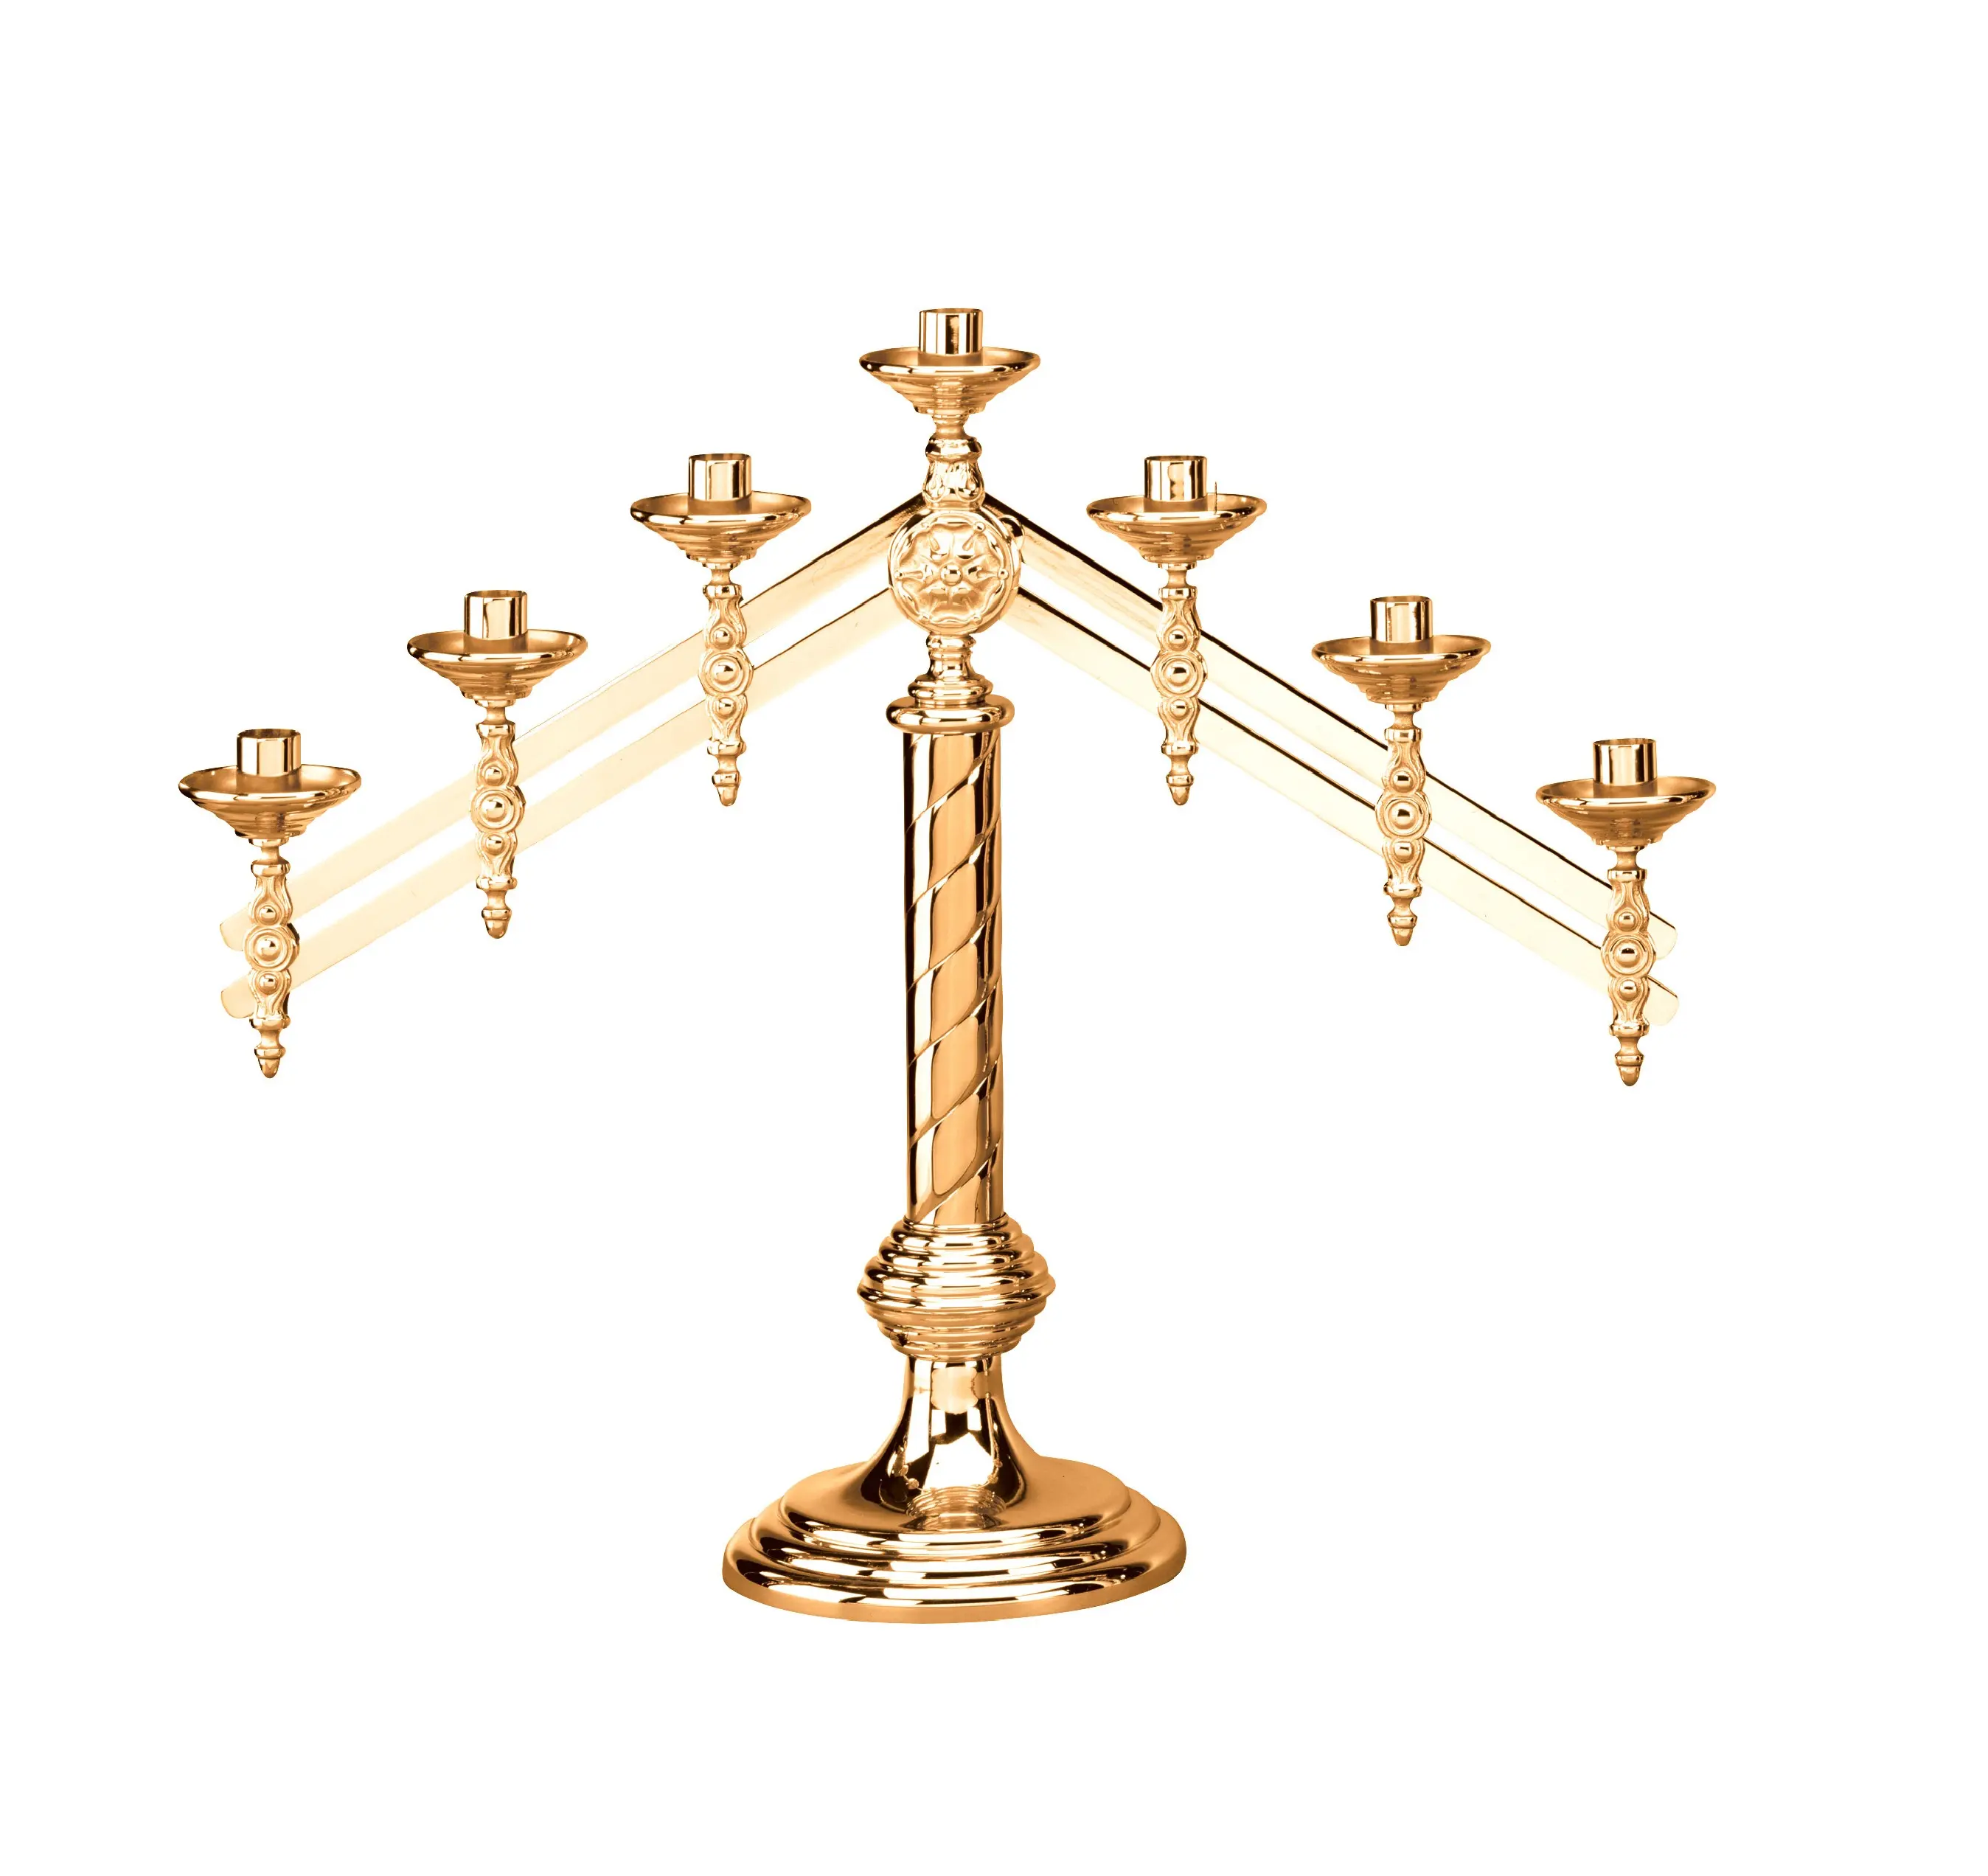 Candelabri metallici dorati candelabri rustici alti sette braccia decorati fatti a mano per centrotavola per decorazioni per la casa e il matrimonio